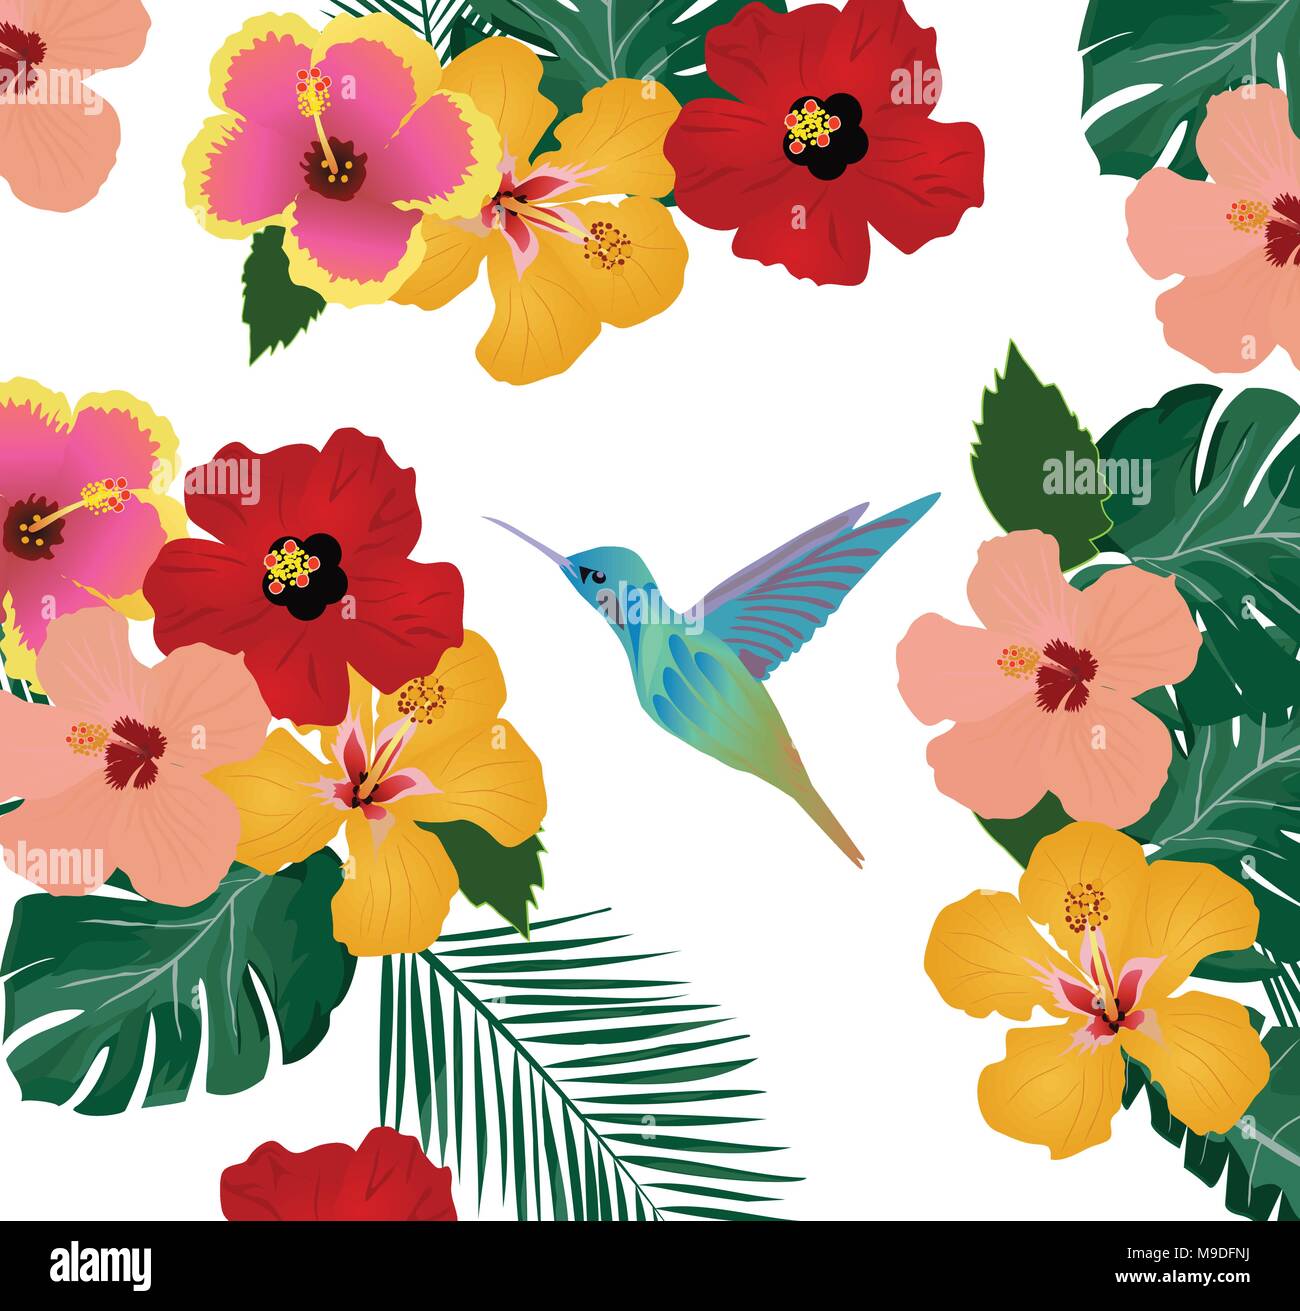 Illustrazione vettoriale di sfondo tropicale con fiori, foglie di palma e hummingbird Illustrazione Vettoriale